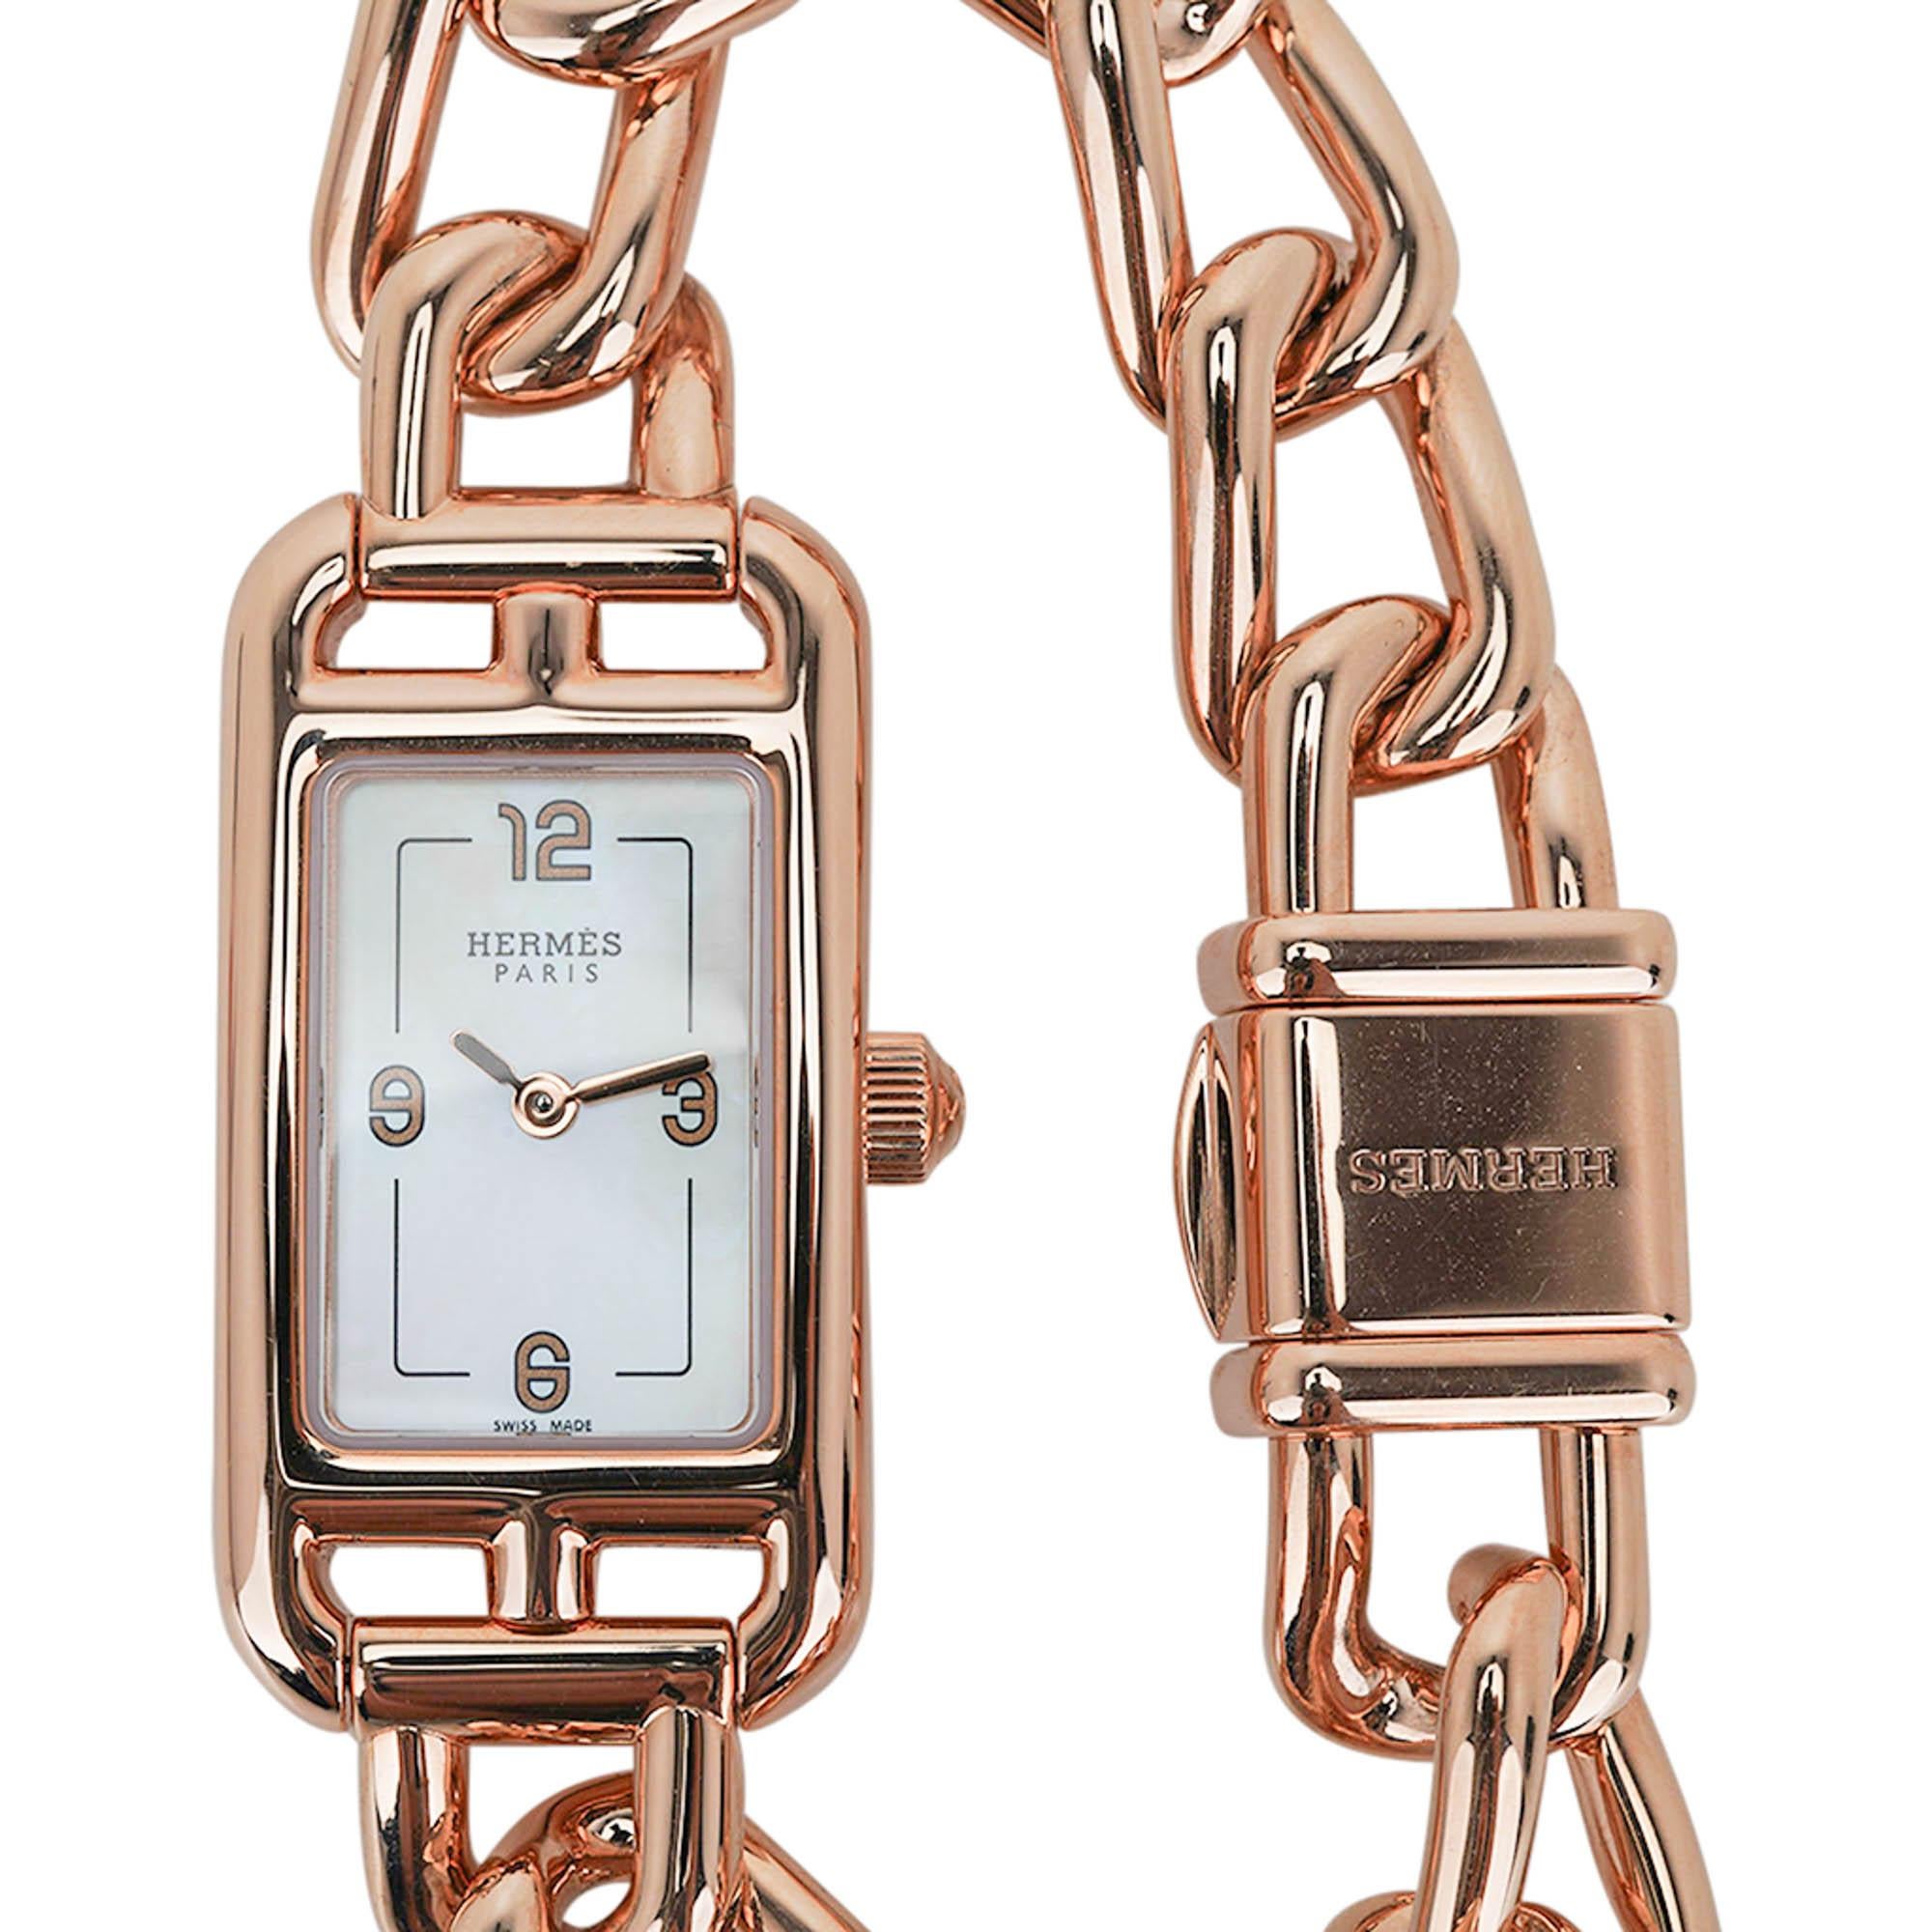 Mightychic propose une montre Hermes Nantucket Small Model en or rose 18 carats.
Cette magnifique montre est le petit modèle de 29 mm avec bracelet en or rose.
Cadran en nacre blanche avec fonctions heures uniquement.
Fabriqué en Suisse avec un